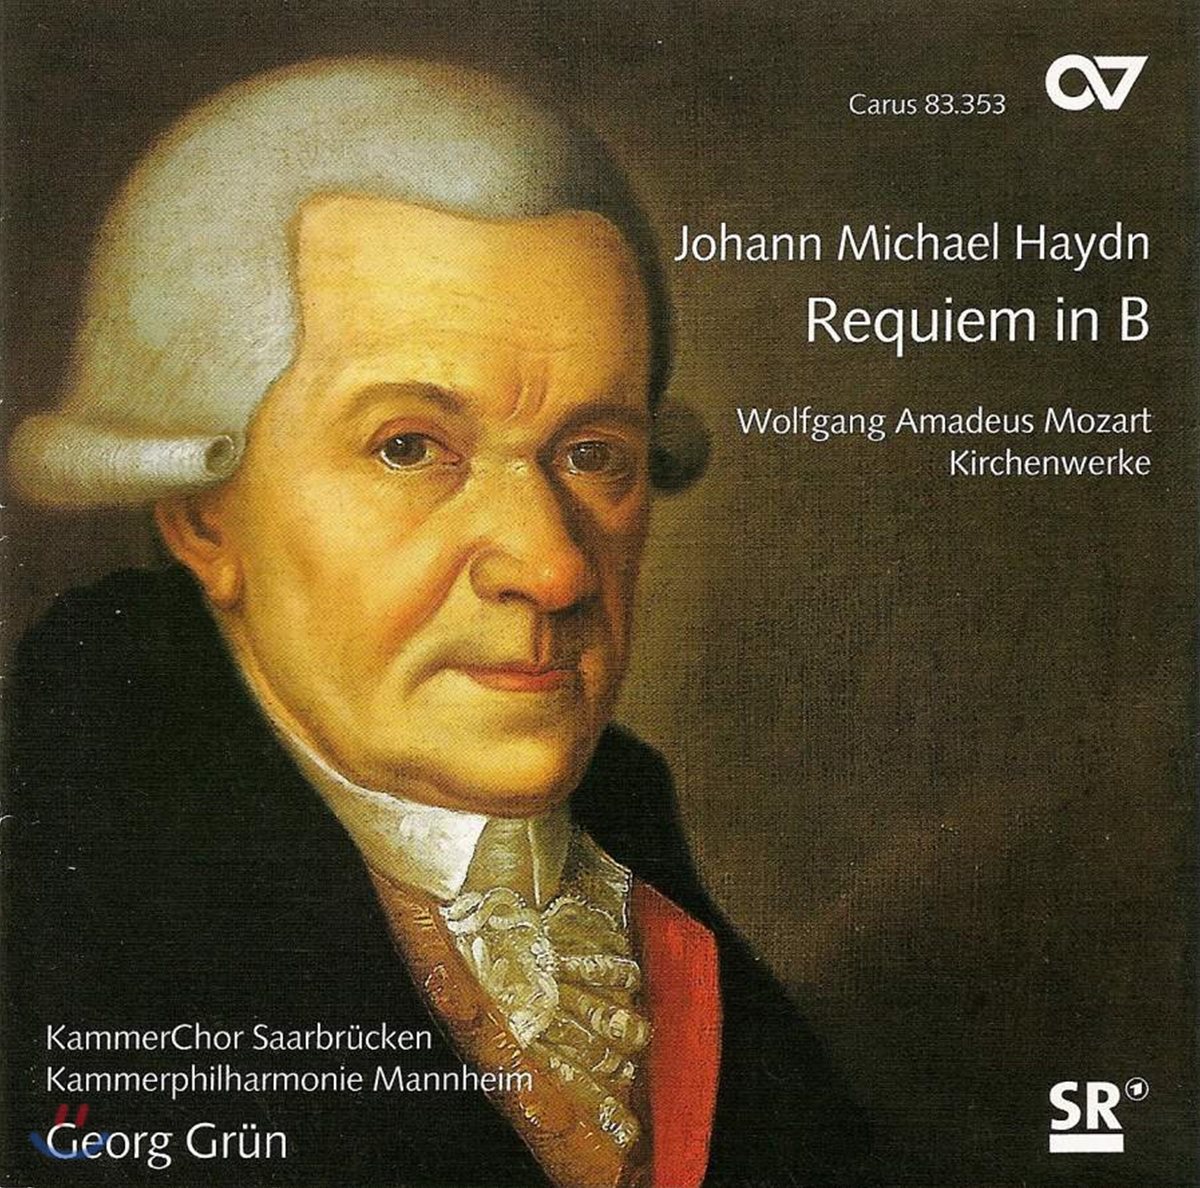 Georg Grun 미하일 하이든: 레퀴엠 / 모차르트: 합창곡 (Michael Haydn: Requiem / Mozart: Choral Works)